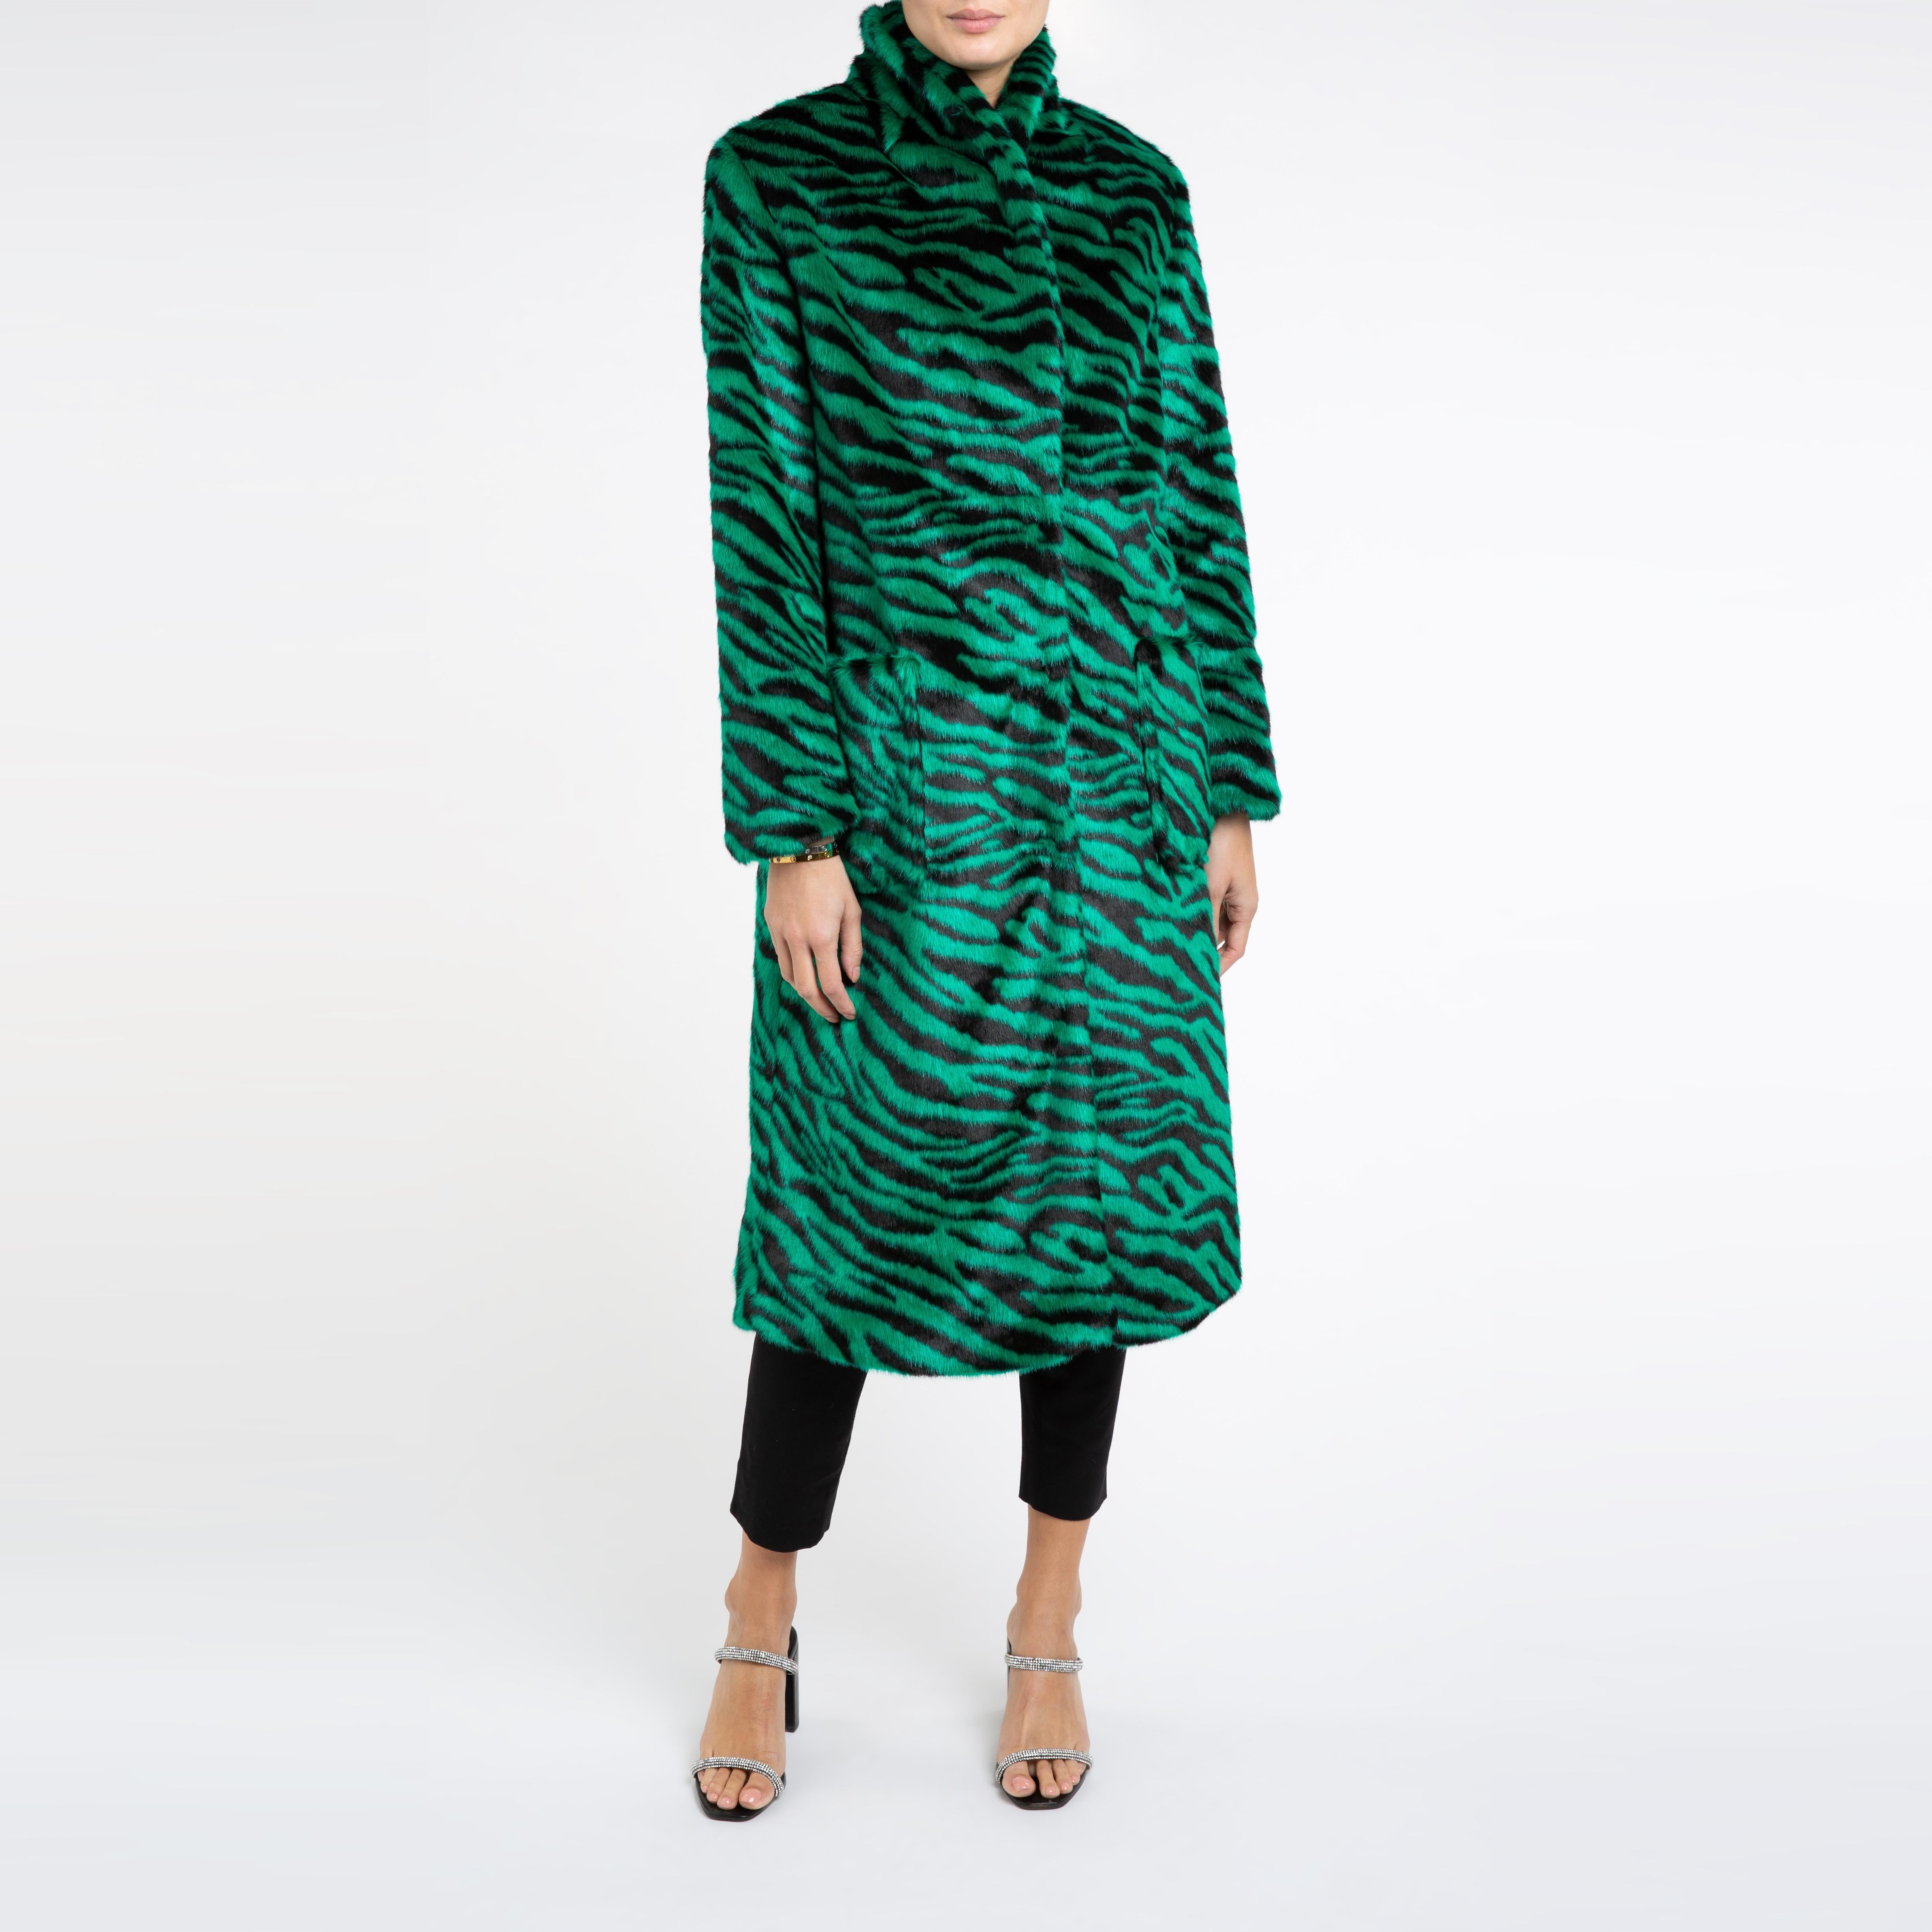 Verheyen London Esmeralda Faux Fur Coat in Emerald Green Zebra Print size uk 14 For Sale 2